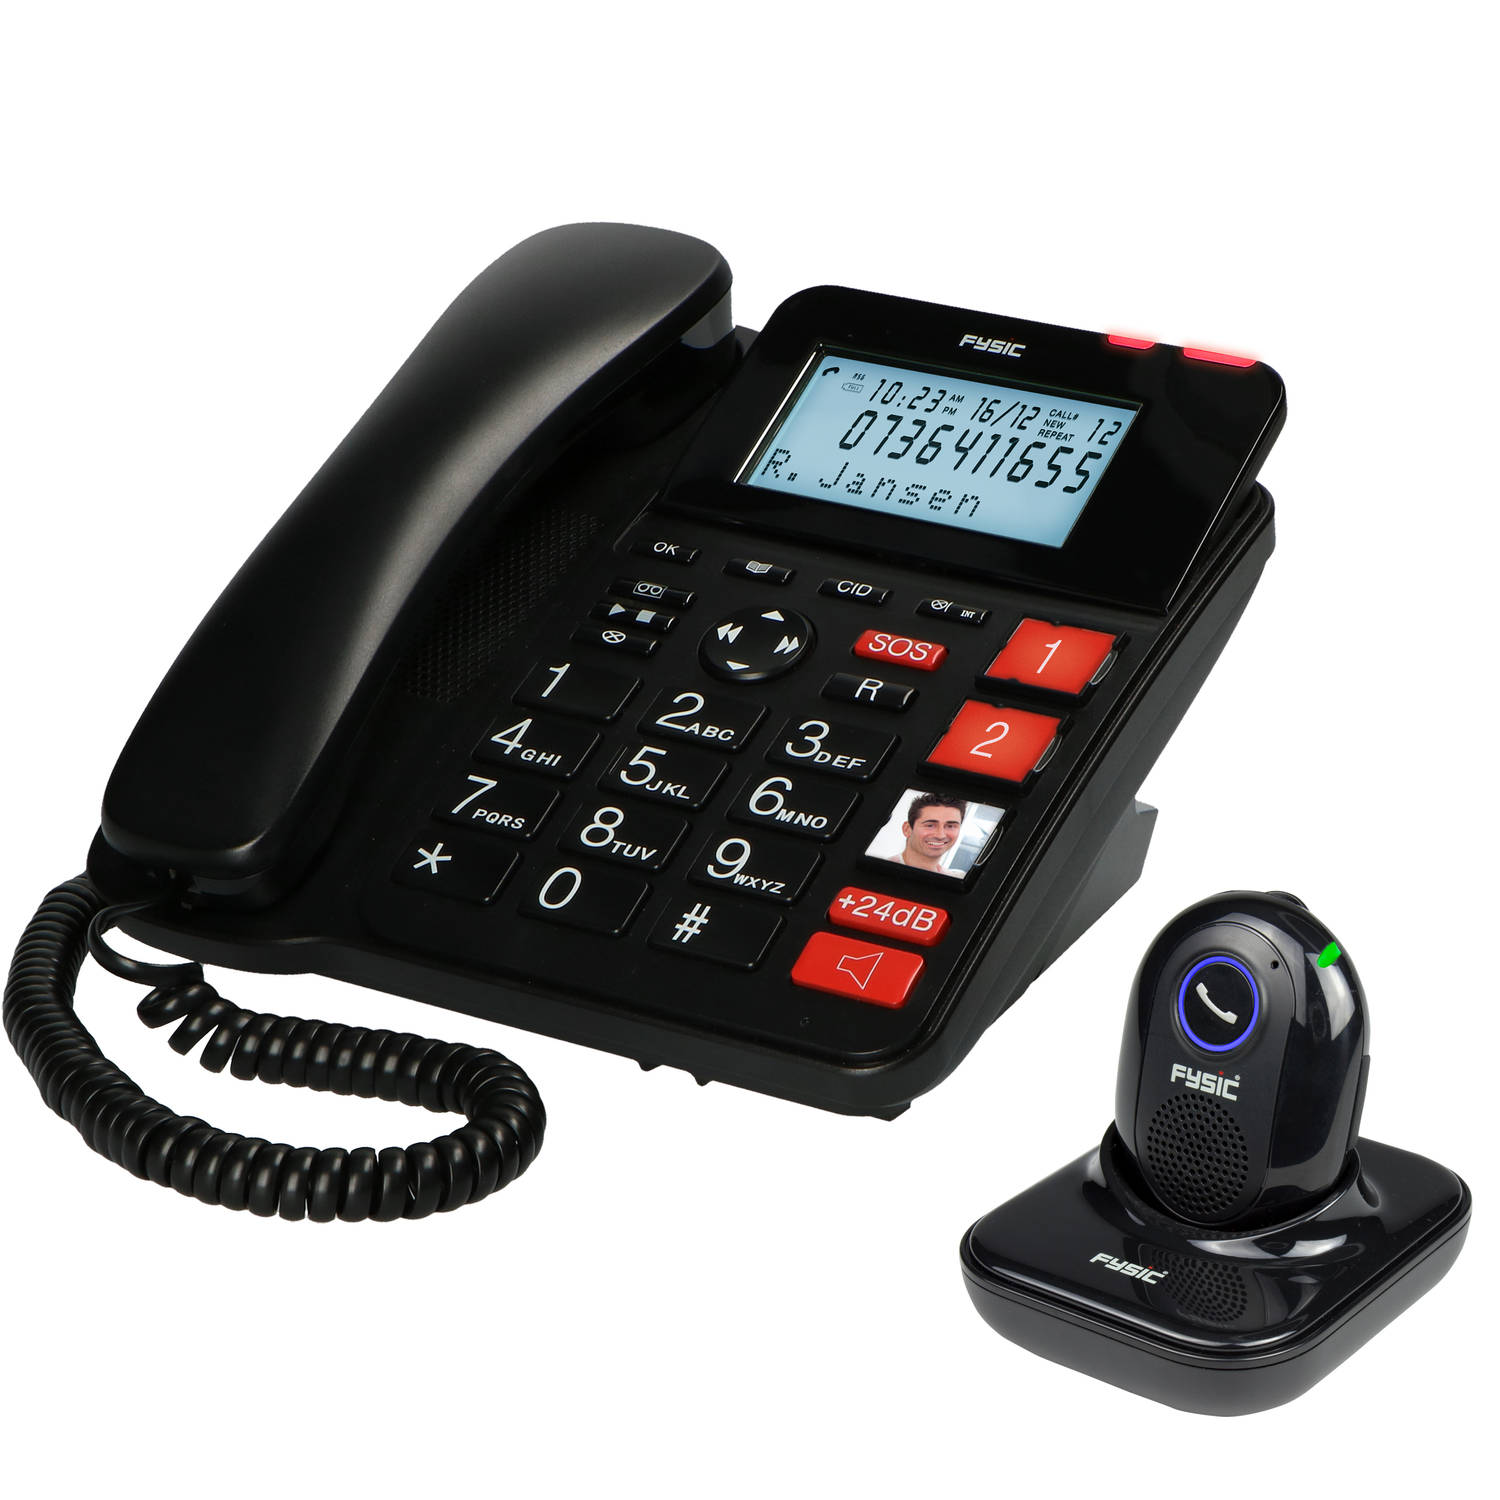 Vaste Telefoon Met Antwoordapparaat En Draadloze Sos Paniekknop Fysic Fx3960 Rood-zwart